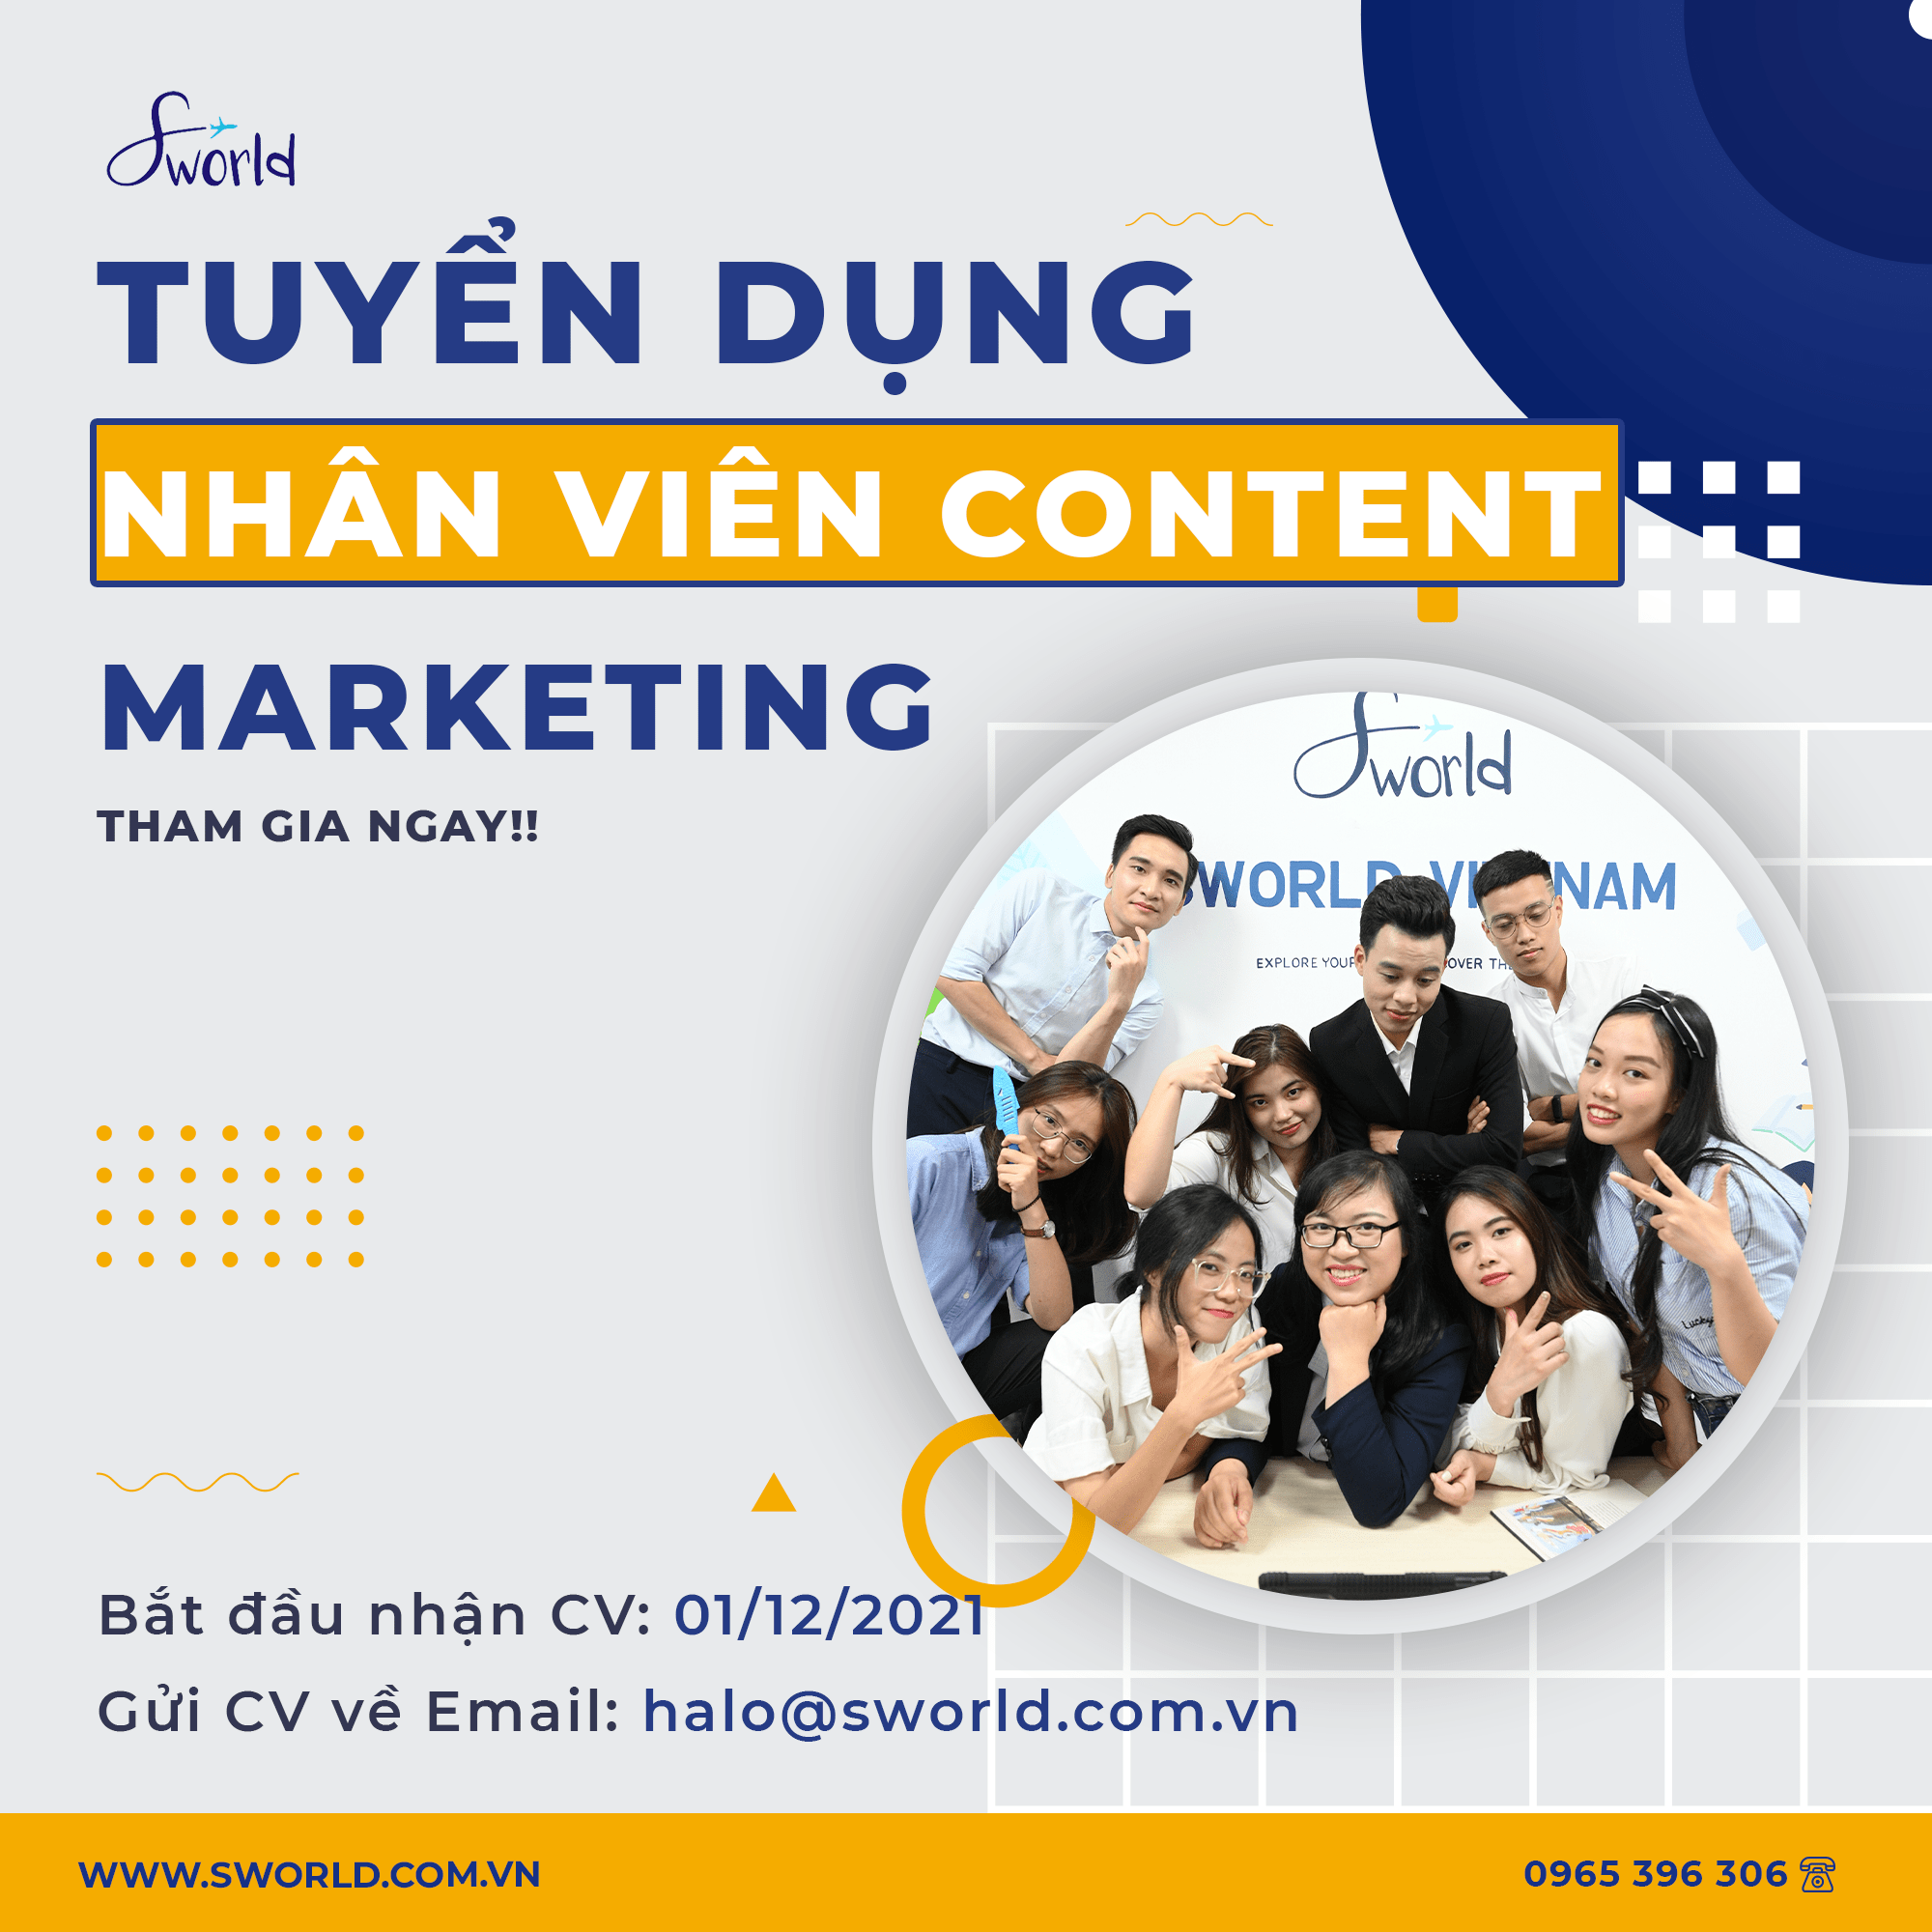 Sworld Việt Nam tuyển nhân viên Content Marketing - T12 2021